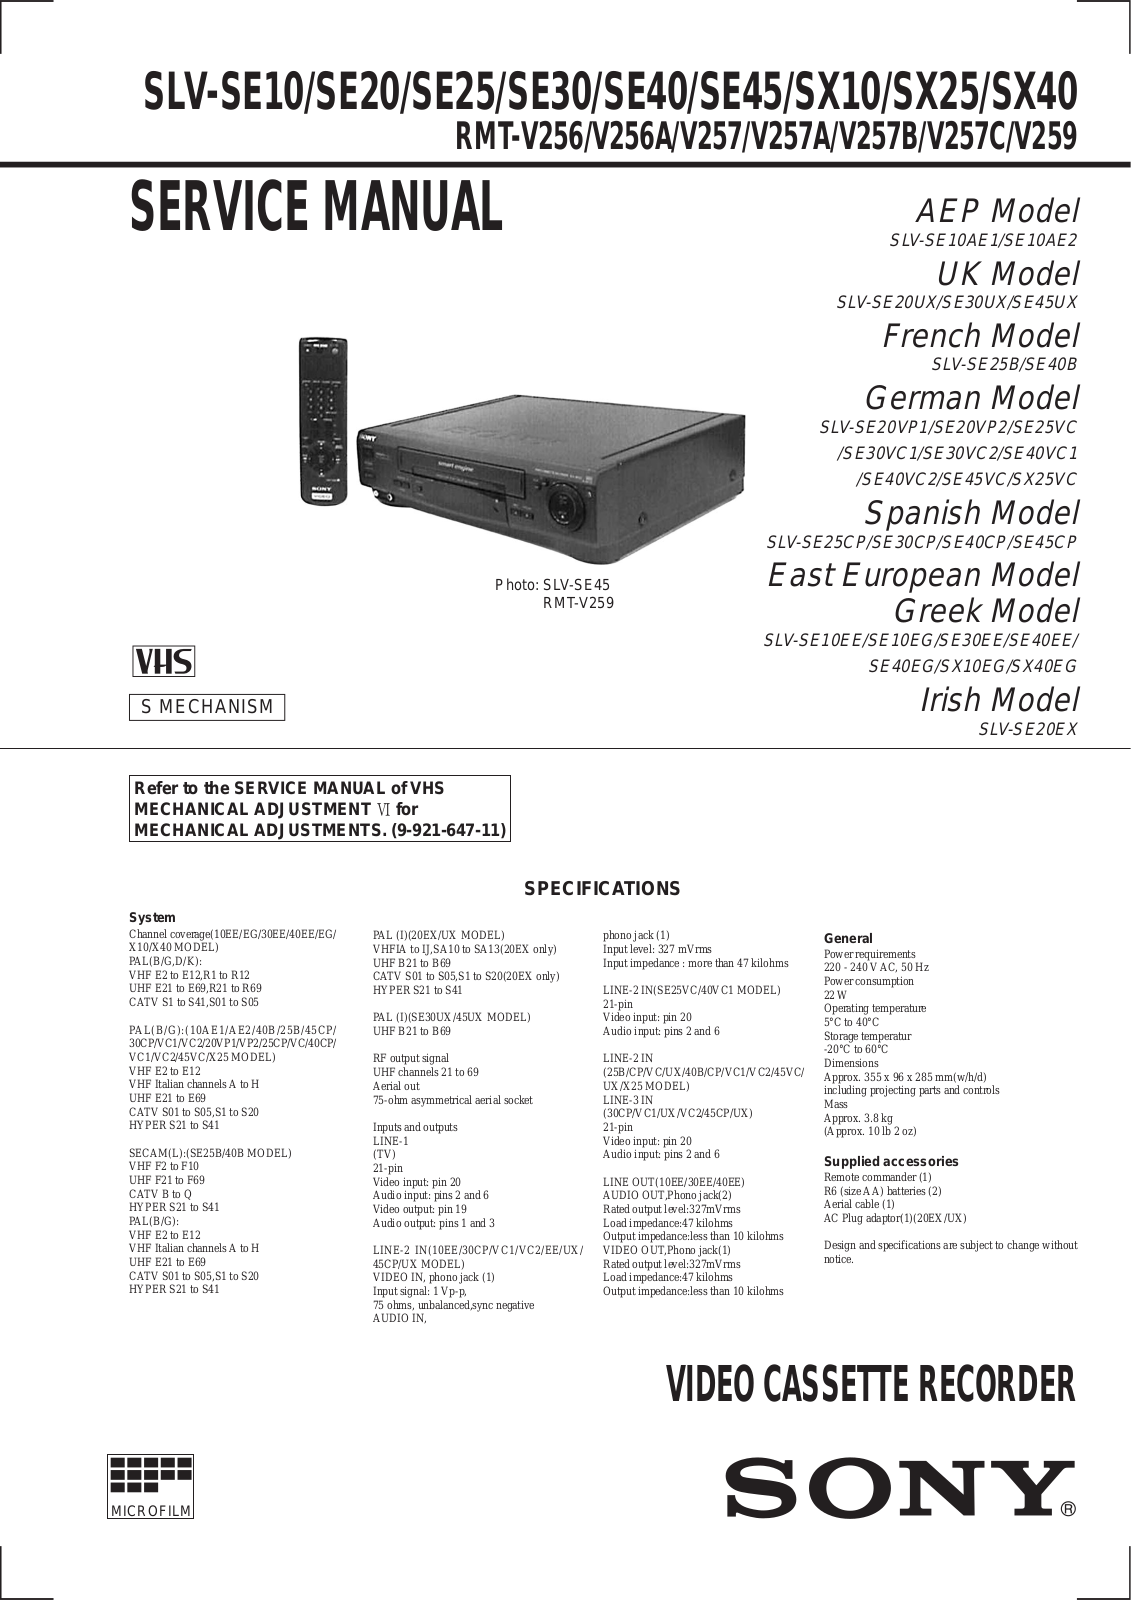 Sony SLV-SE10, SLV-SE20, SLV-SE25 Service Manual